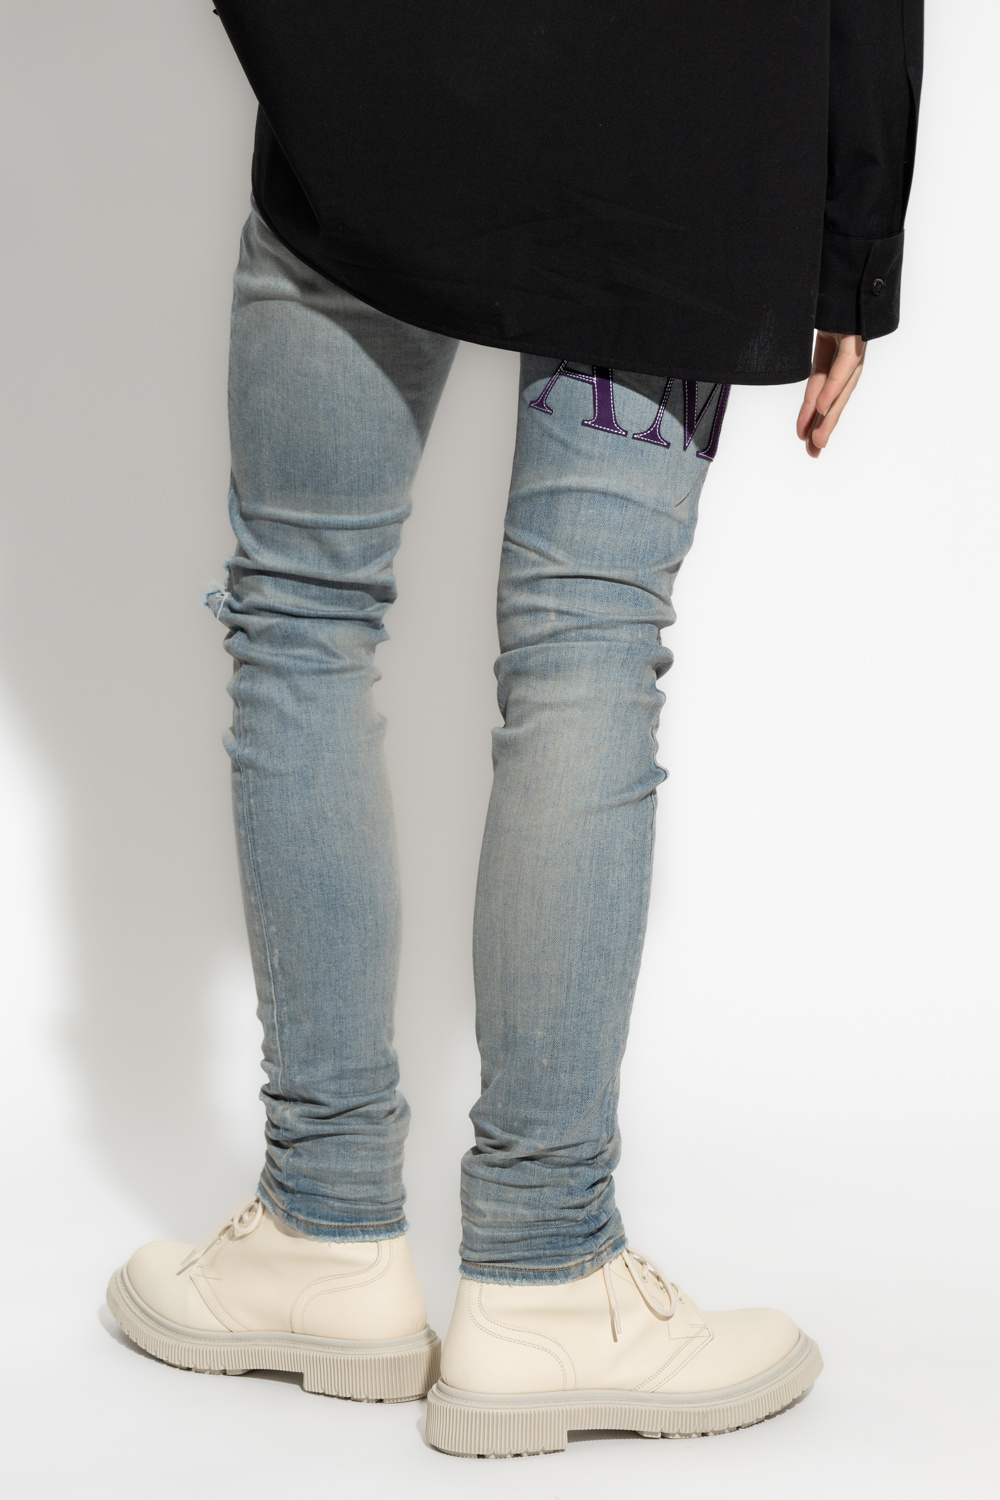 Amiri Neil Barrett Slim-Fit Jeans